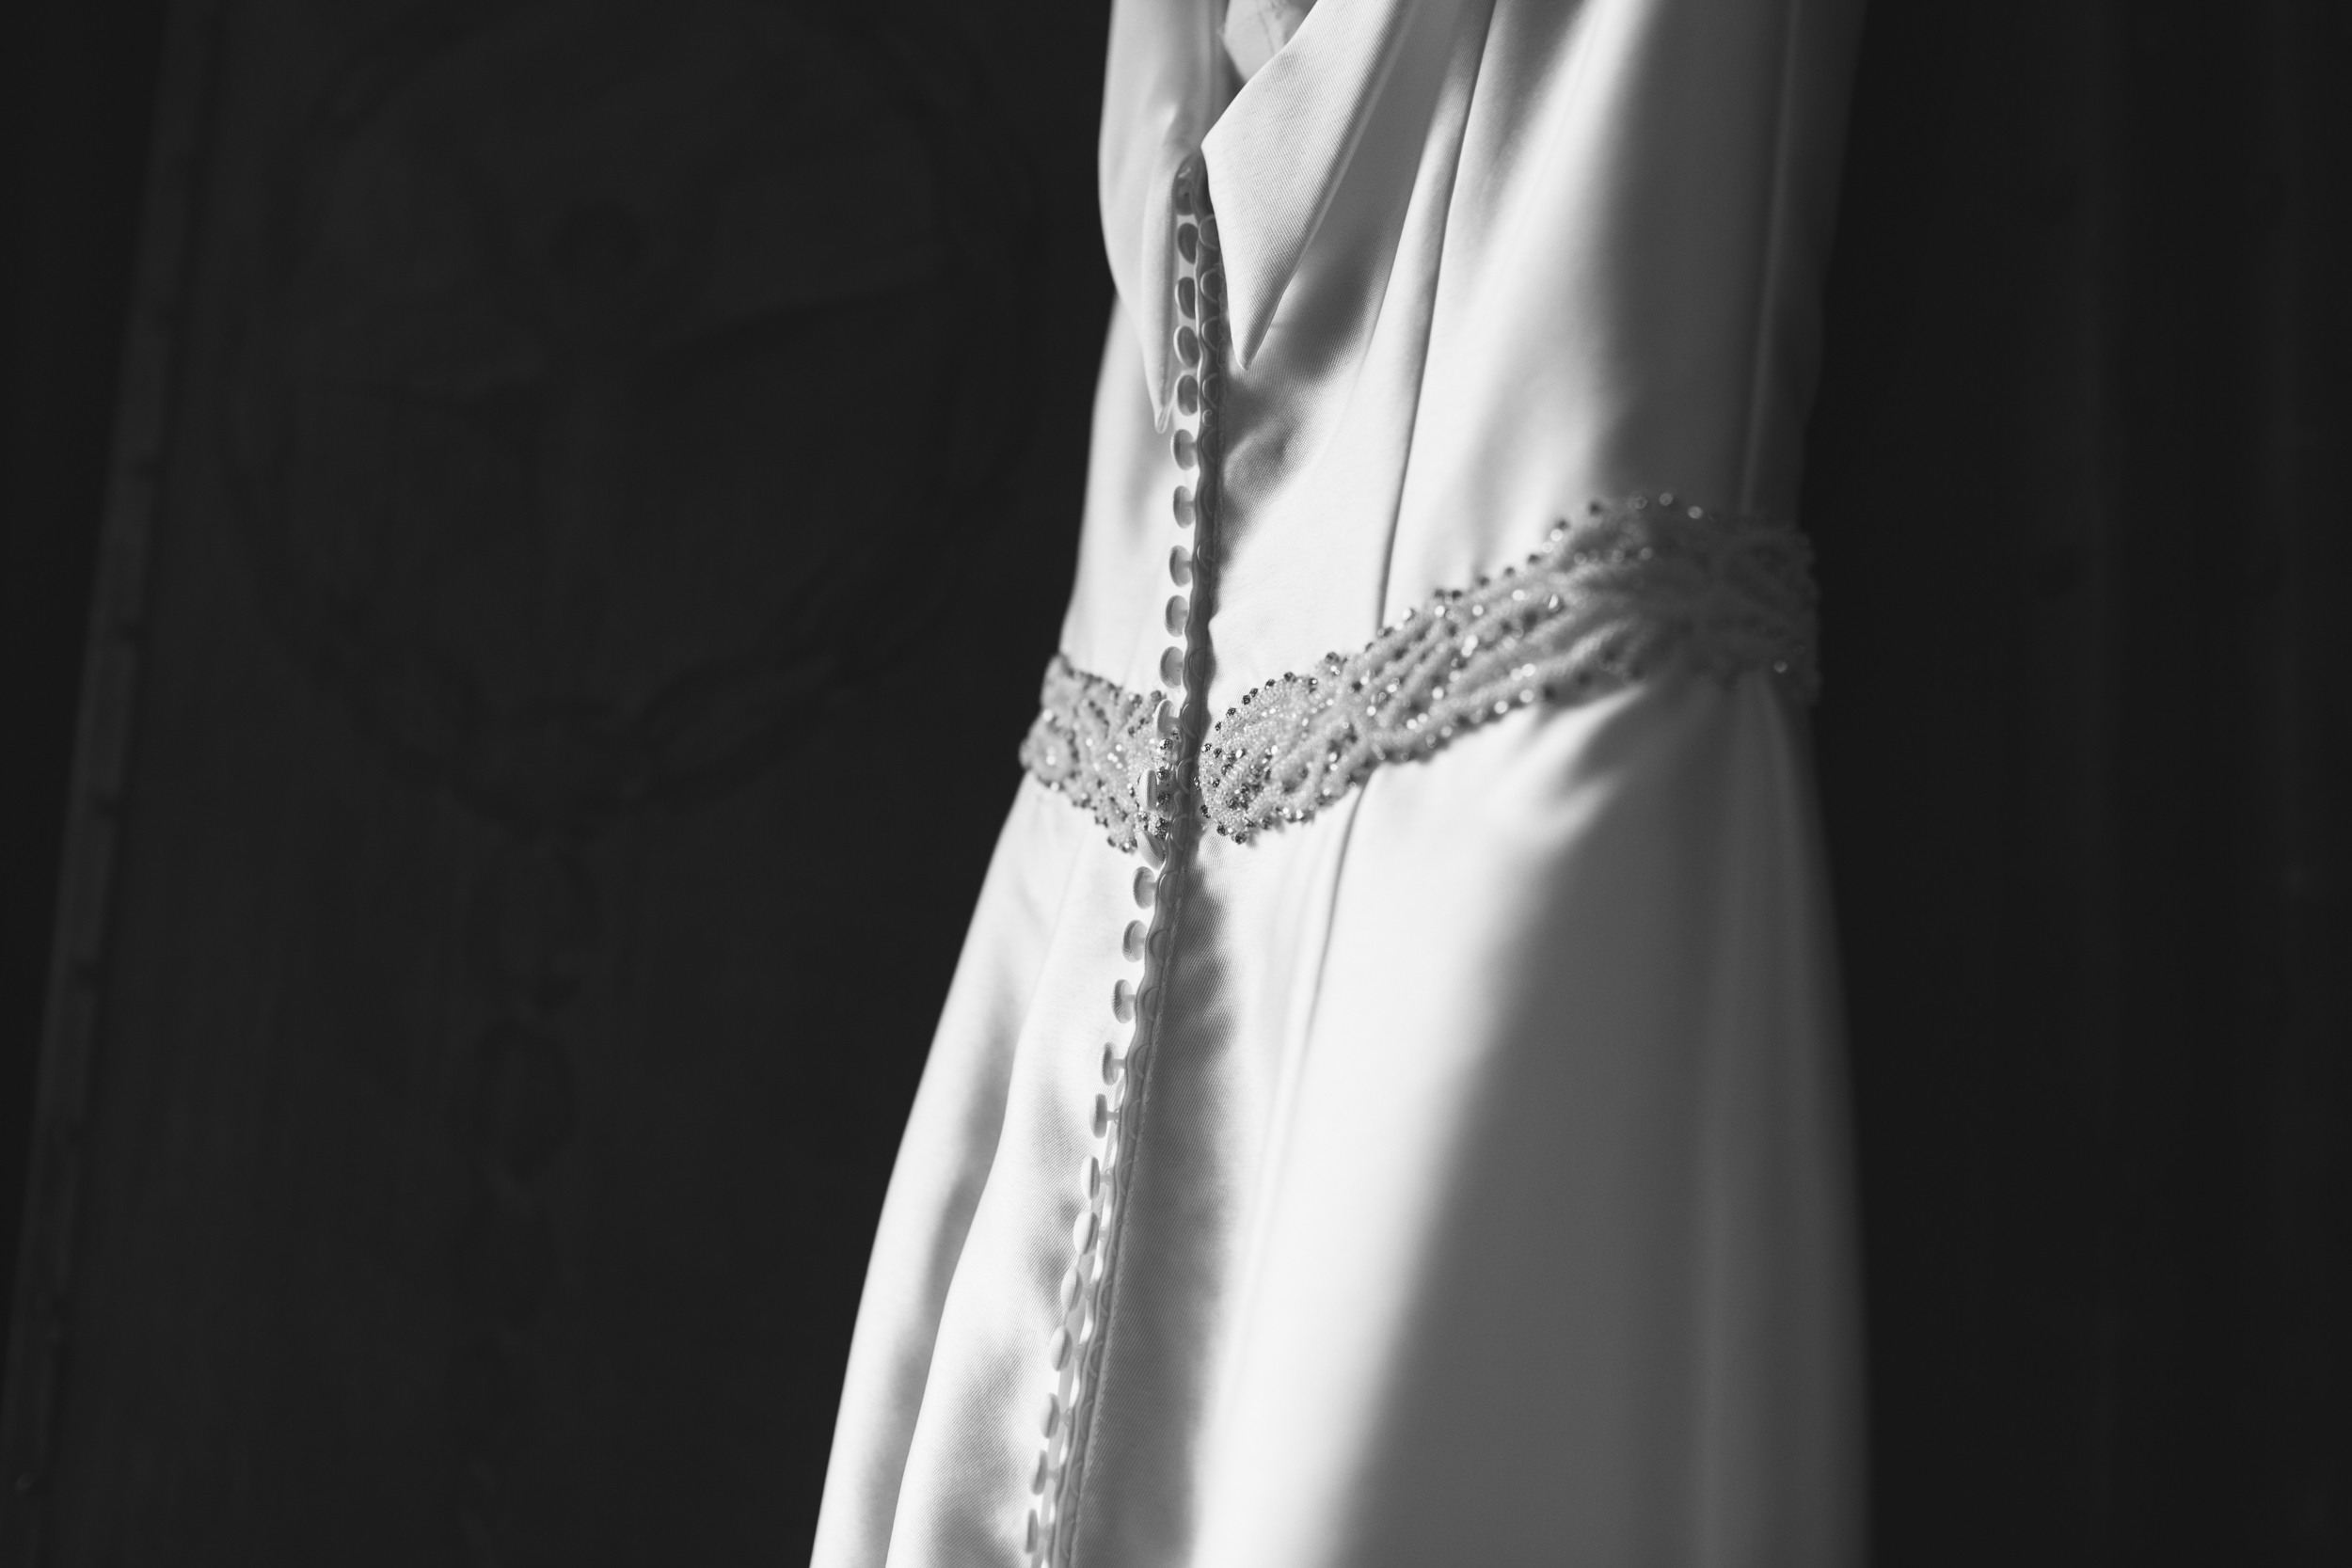 aberdeen wedding dress